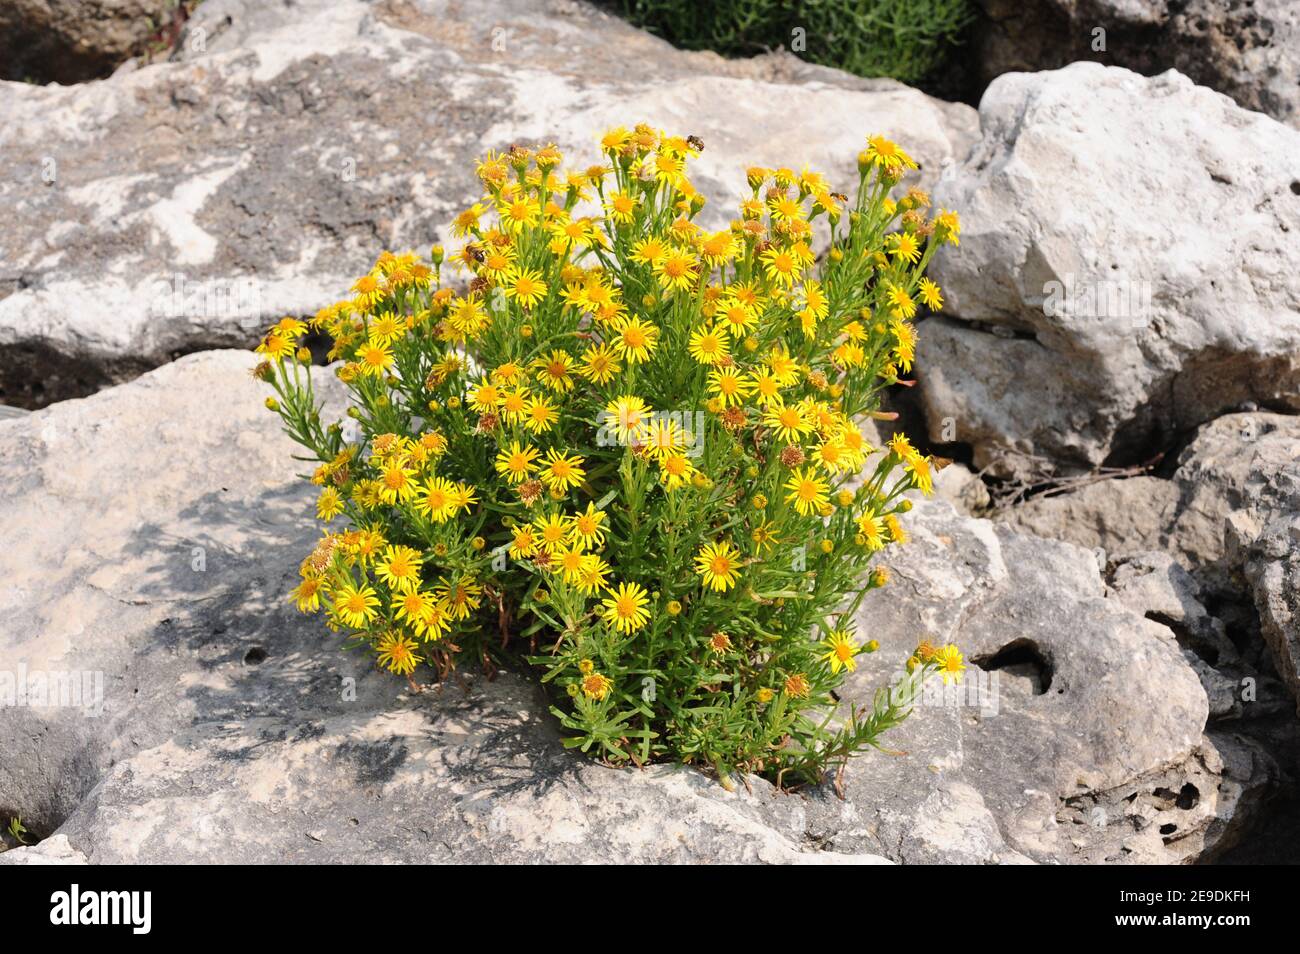 El zafiro dorado (Inula cristhmoides o Limbarda cristhmoides) es una hierba perenne nativa de las costas de la cuenca mediterránea y las costas atlánticas de Francia, Foto de stock